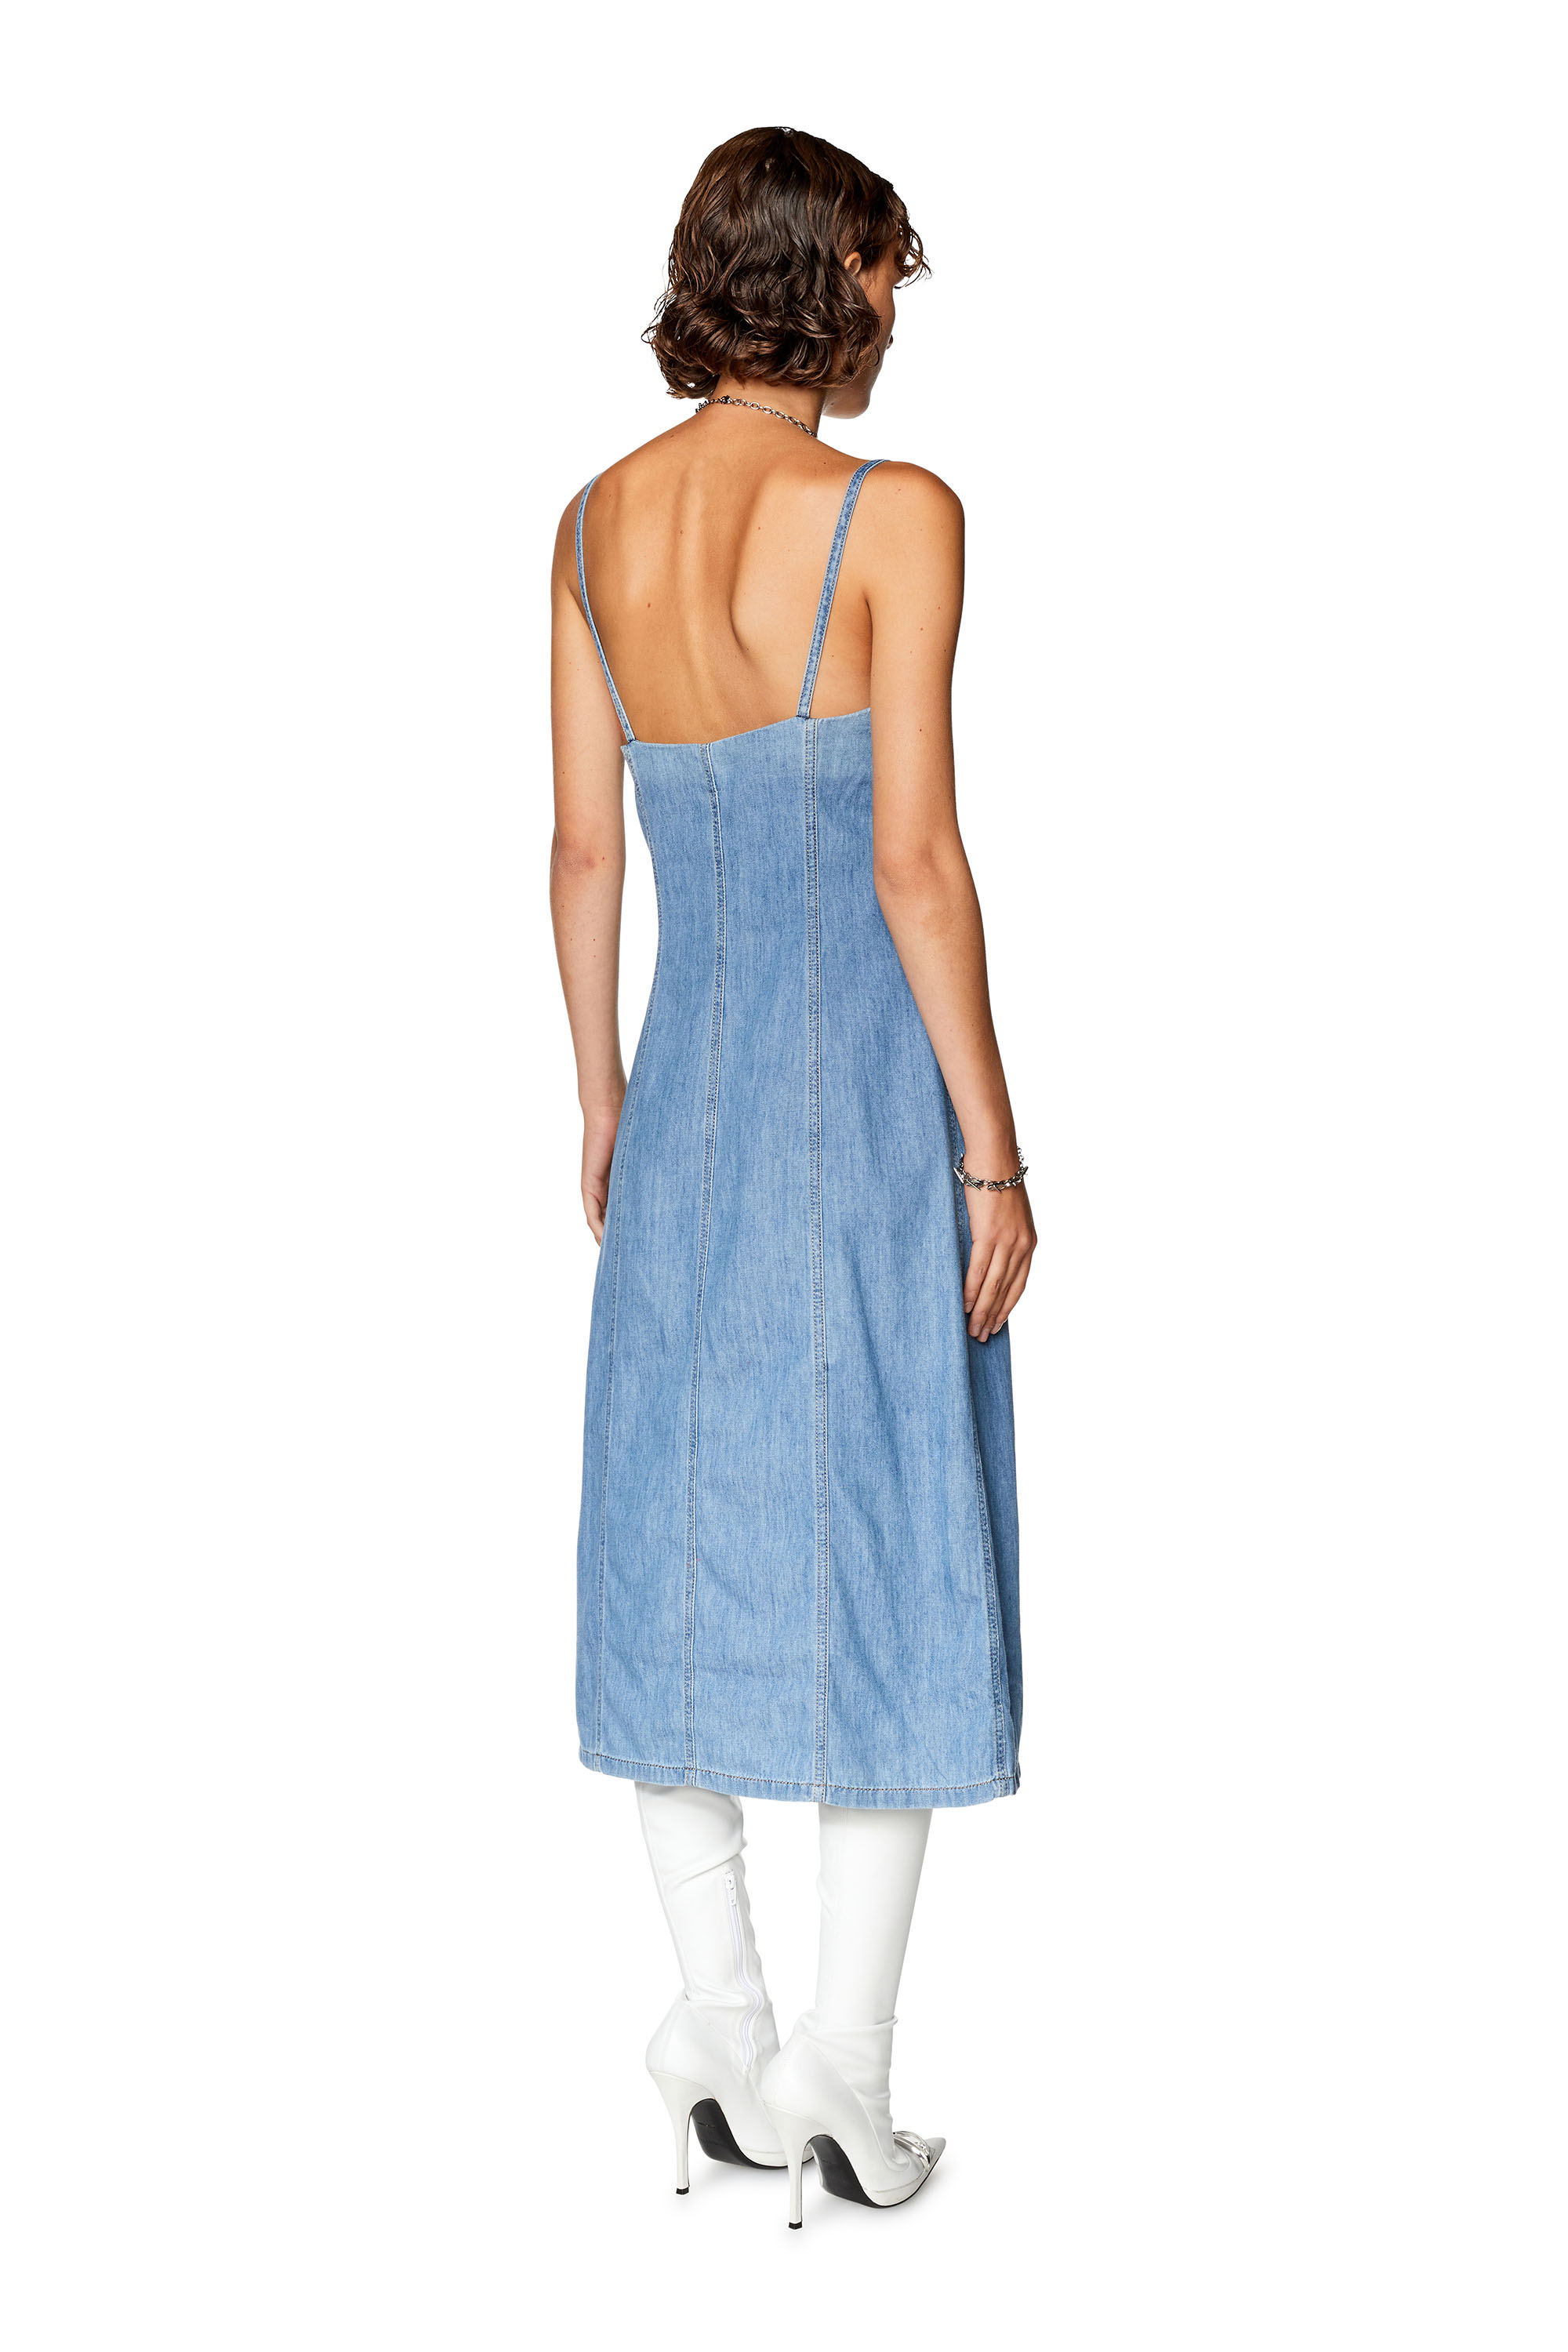 Diesel - DE-DRESSY, Woman Strappy midi dress in fix denim in Blue - Image 3